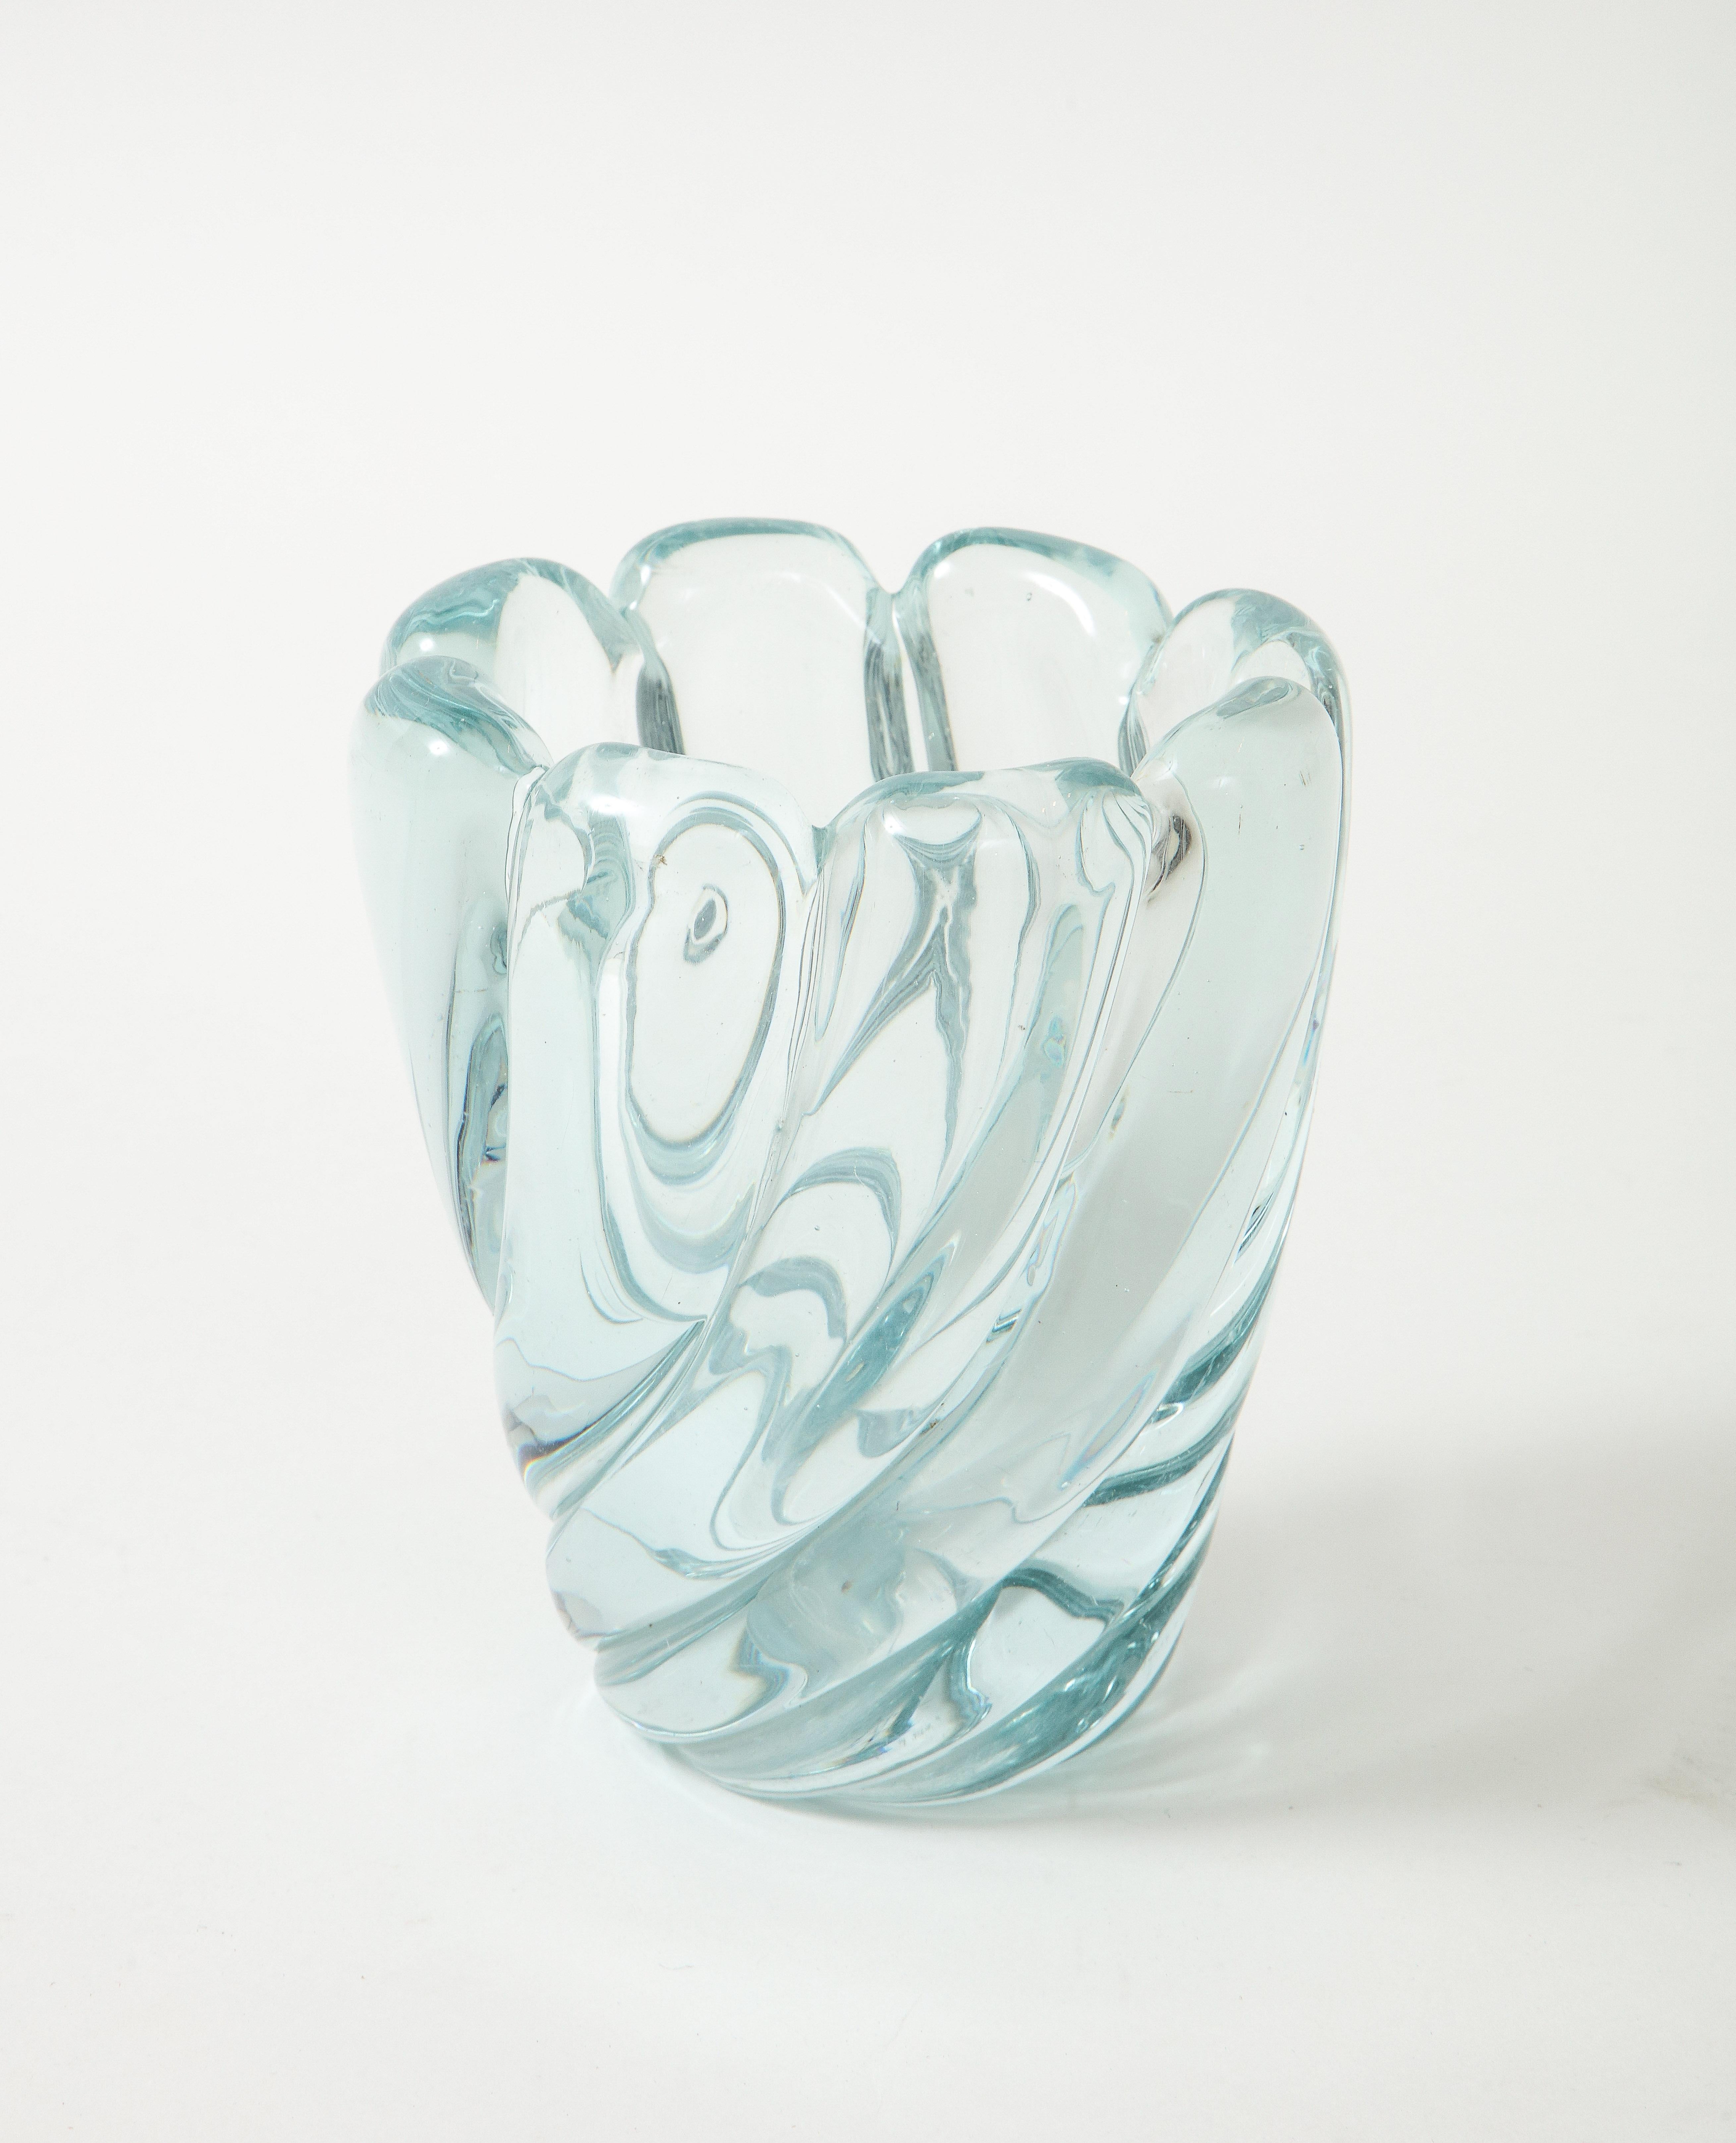 Murano Glass Flavio Poli for Seguso Vetri d'Arte Blown Glass Vase Model 7609, Italy, 1940s For Sale